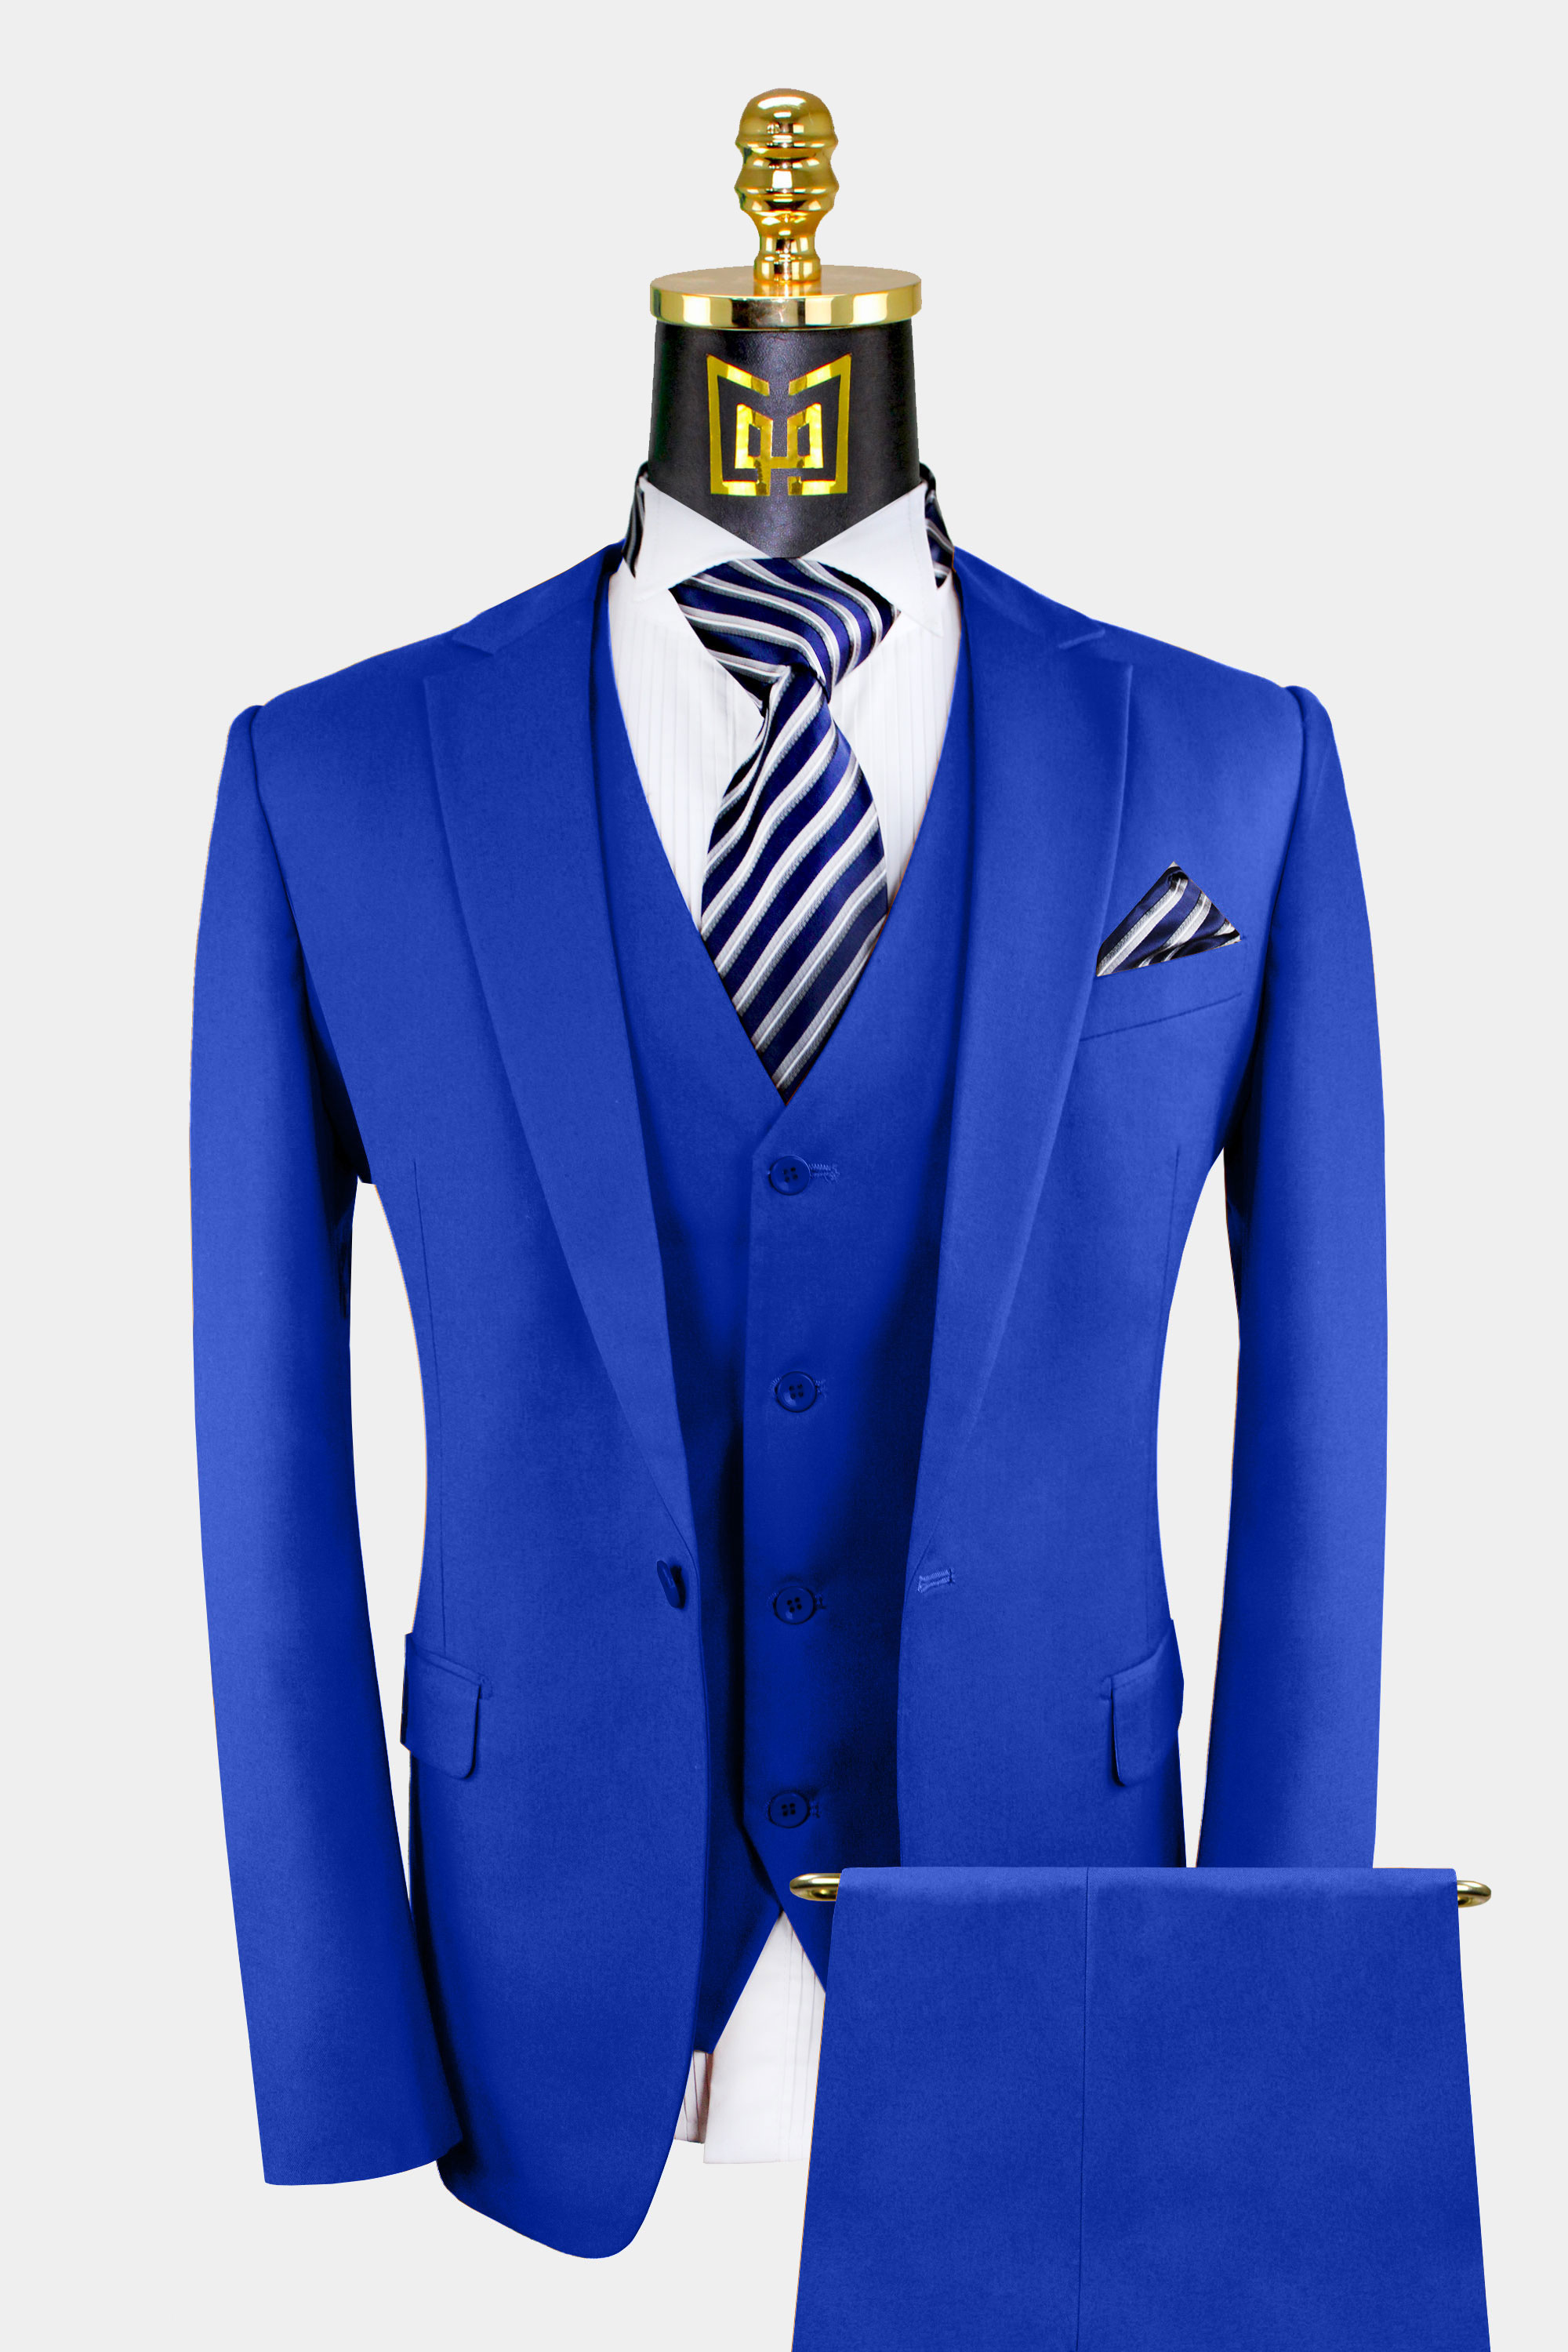 3-Piece-Royal-Blue-Suit-For-Men-Wedding-Groom-Prom-Tuxedo-from-Gentlemansguru.com